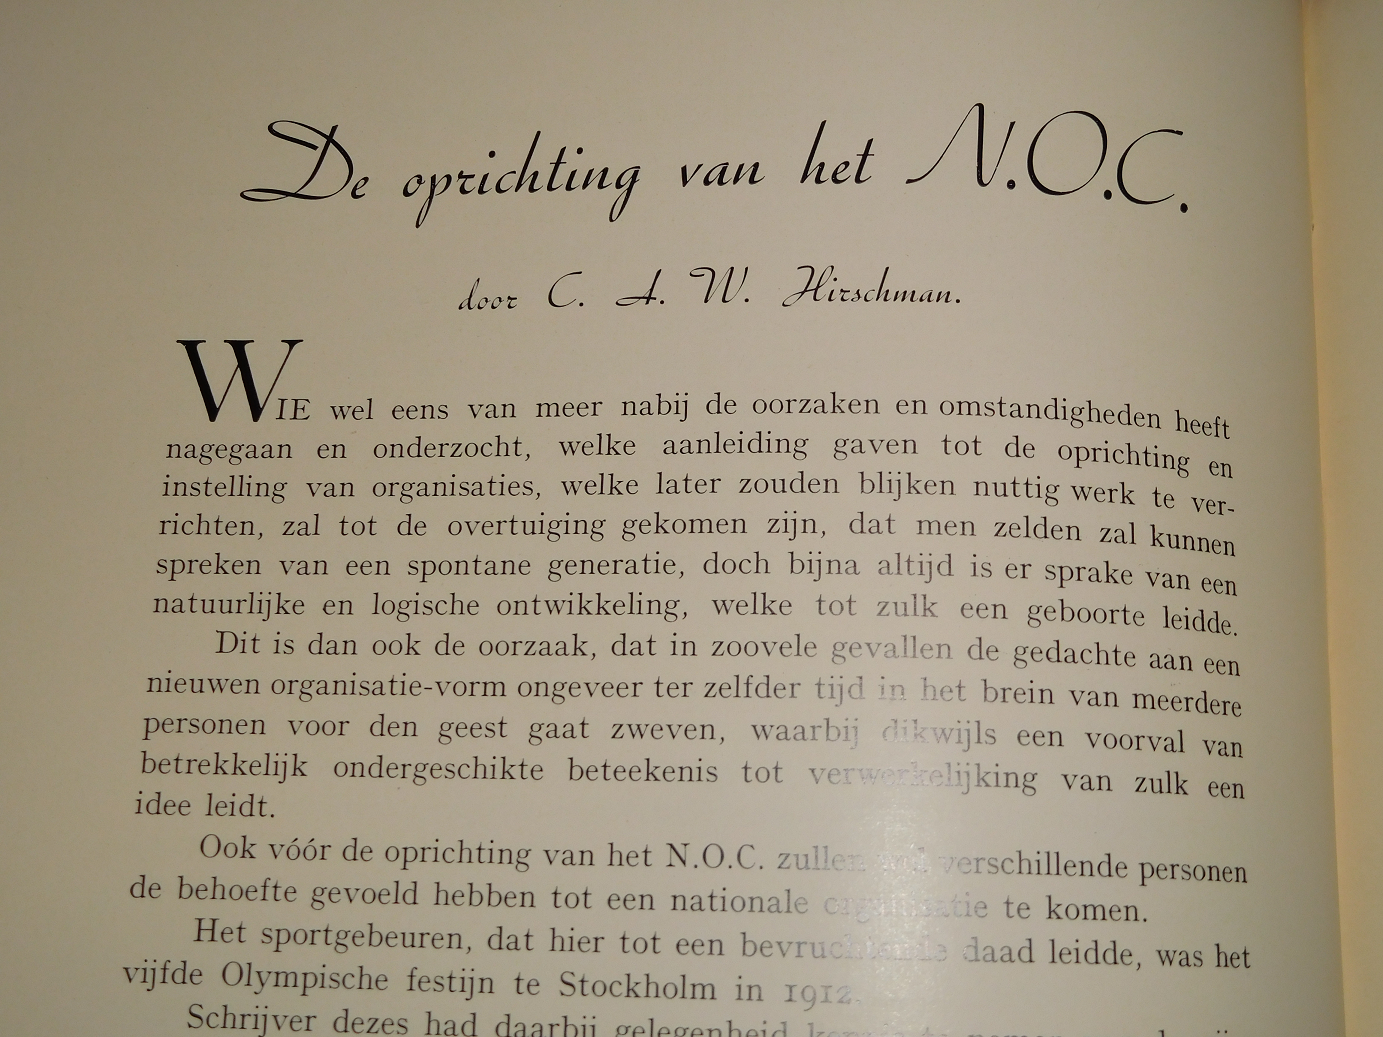 onbekend - Nederlandsch Olympisch Comité - Federatie voor Lichaamsvaardigheid : Gedenkboek bij het 25-jarig bestaan 1912-1937